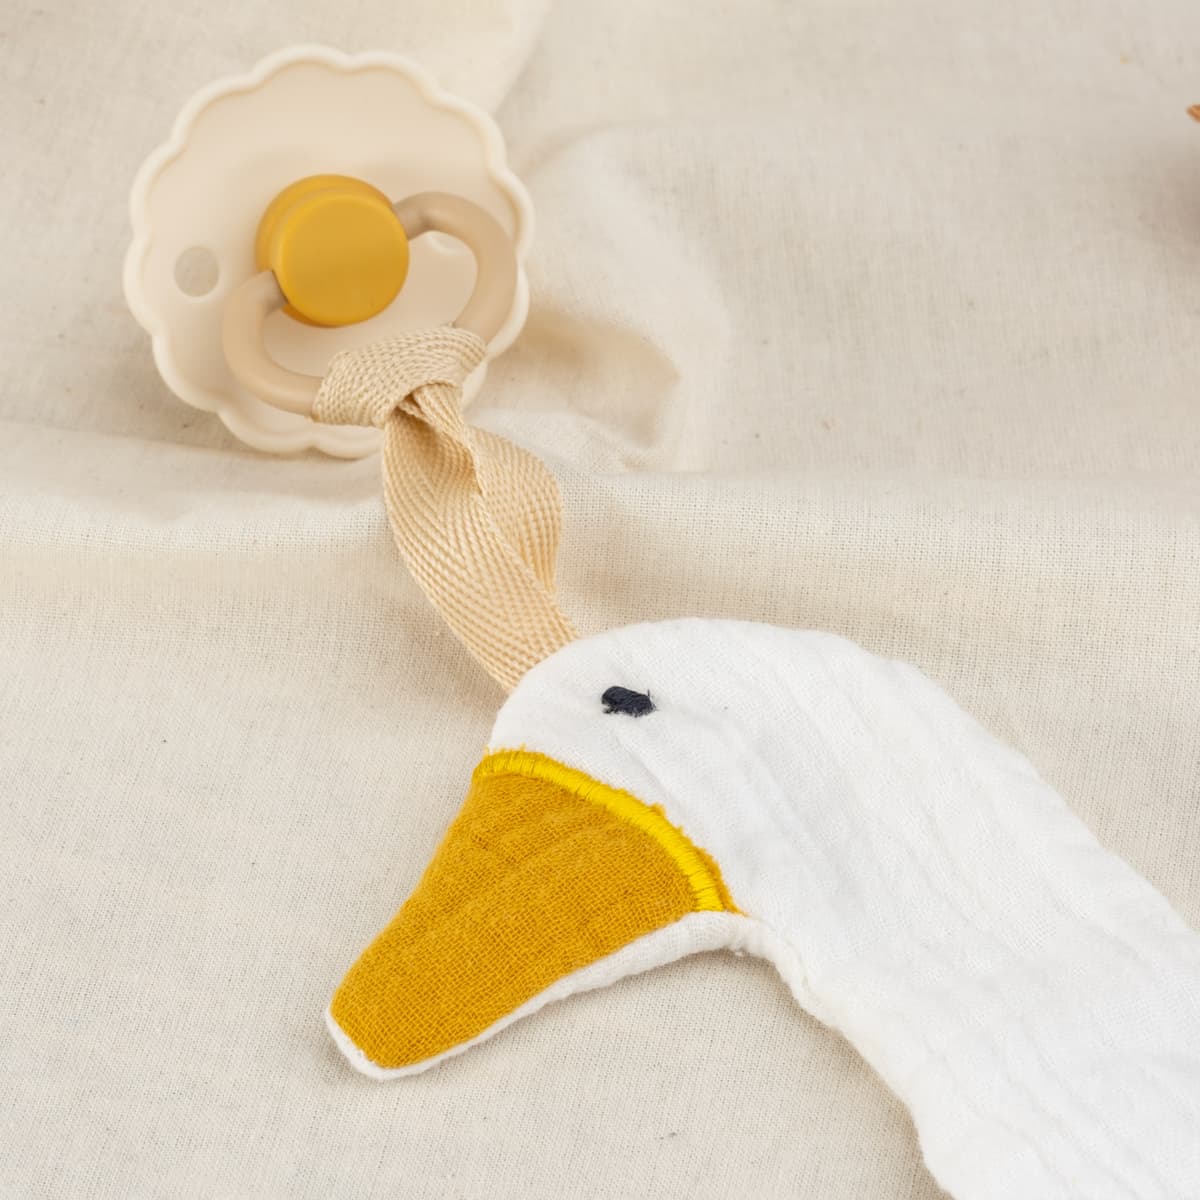 Nuckelkette aus Musselin, Anhänger für Nuckelkette personalisiert mit Wunschnamen, Motiven Ente und Reh. Für Babys, Jungs, Mädchen. (Weiß Ente)